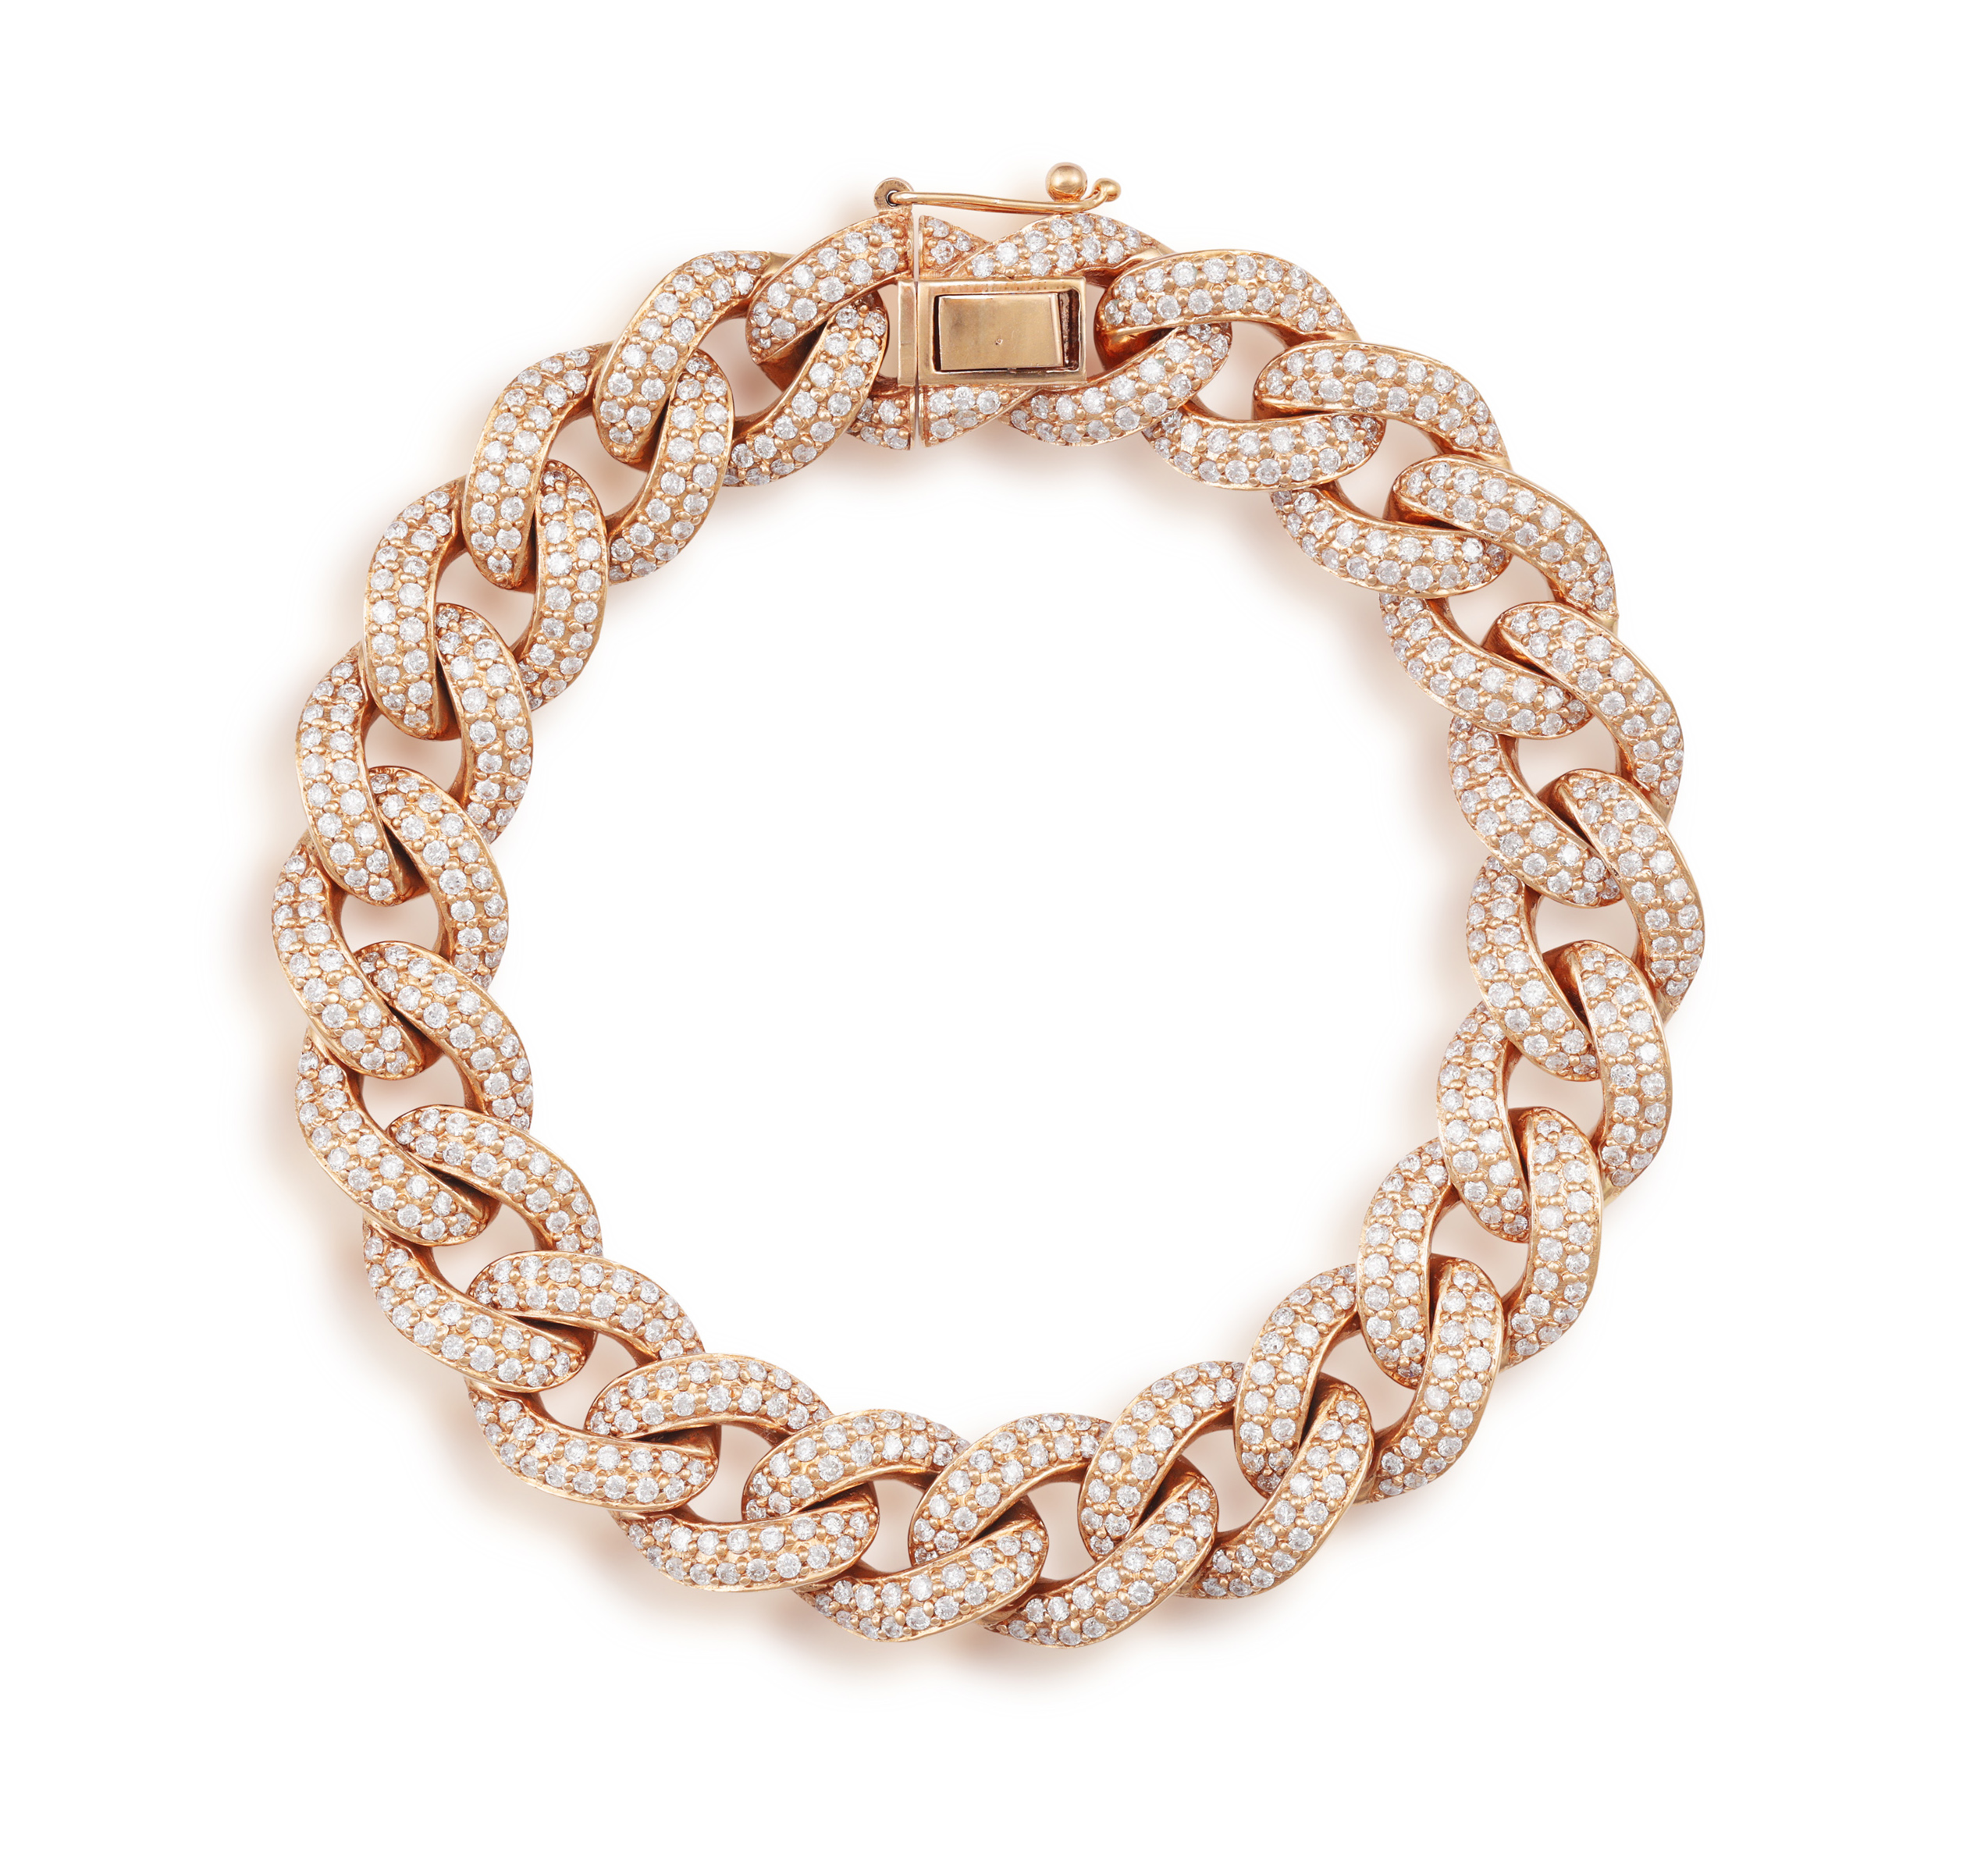 A DIAMOND GOURMETTE BRACELET The curb-link chain bracelet pavé-set with brilliant-cut diamonds